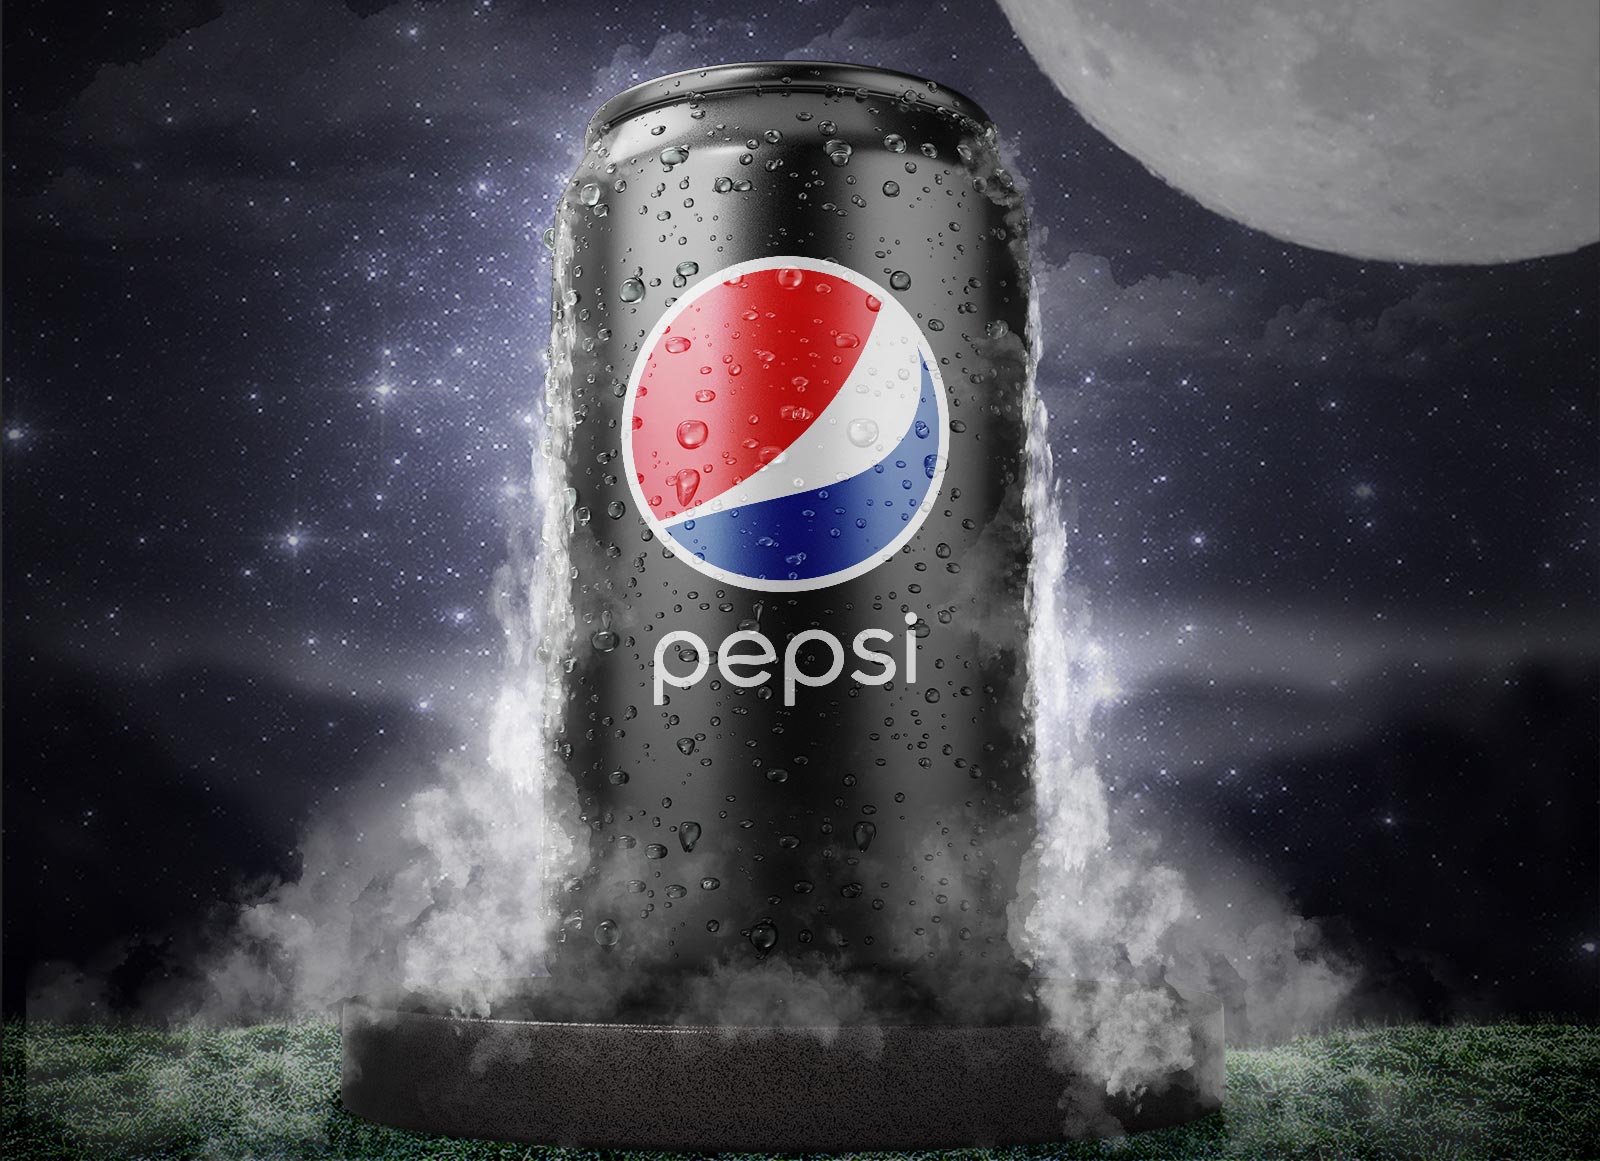 Free-Pepsi-3D-Tin-Can-Mockup-PSD